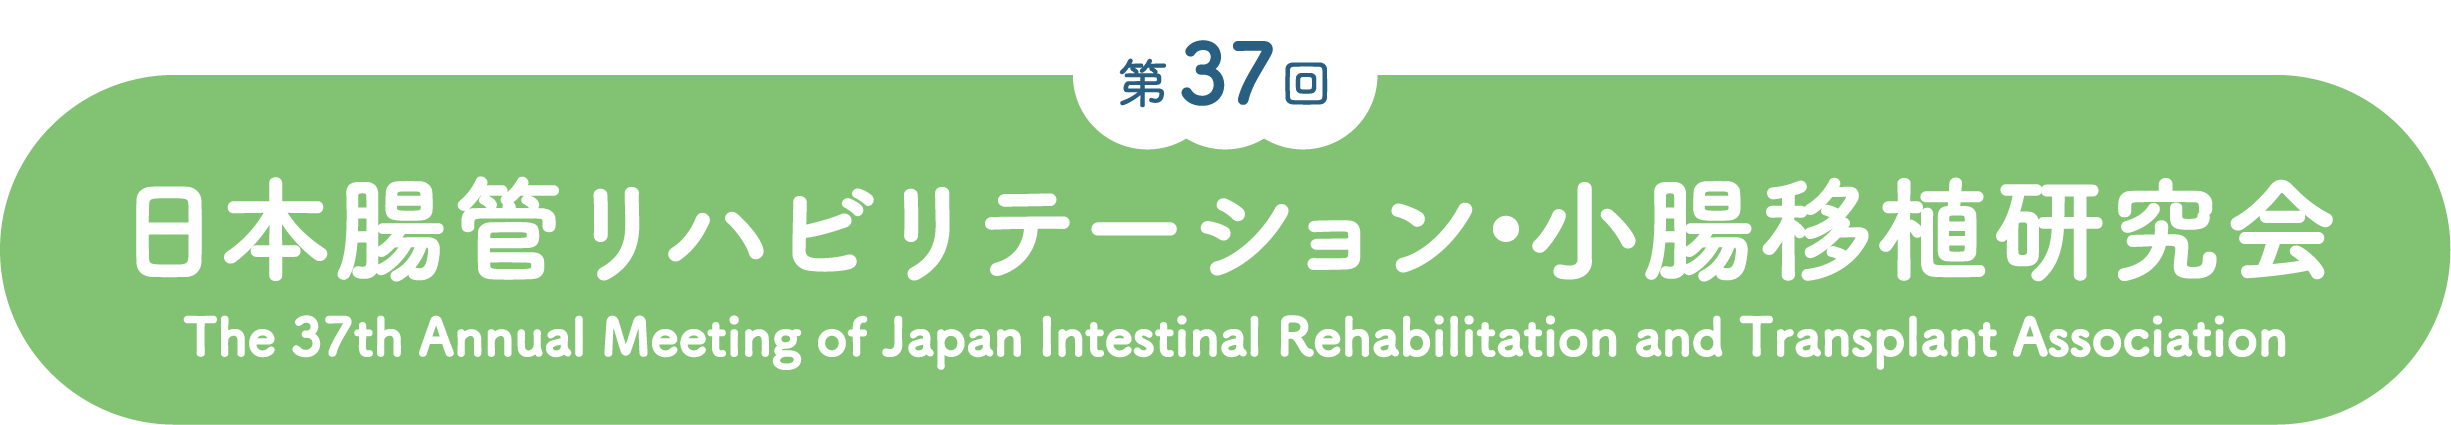 第37回日本腸管リハビリテーション・小腸移植研究会